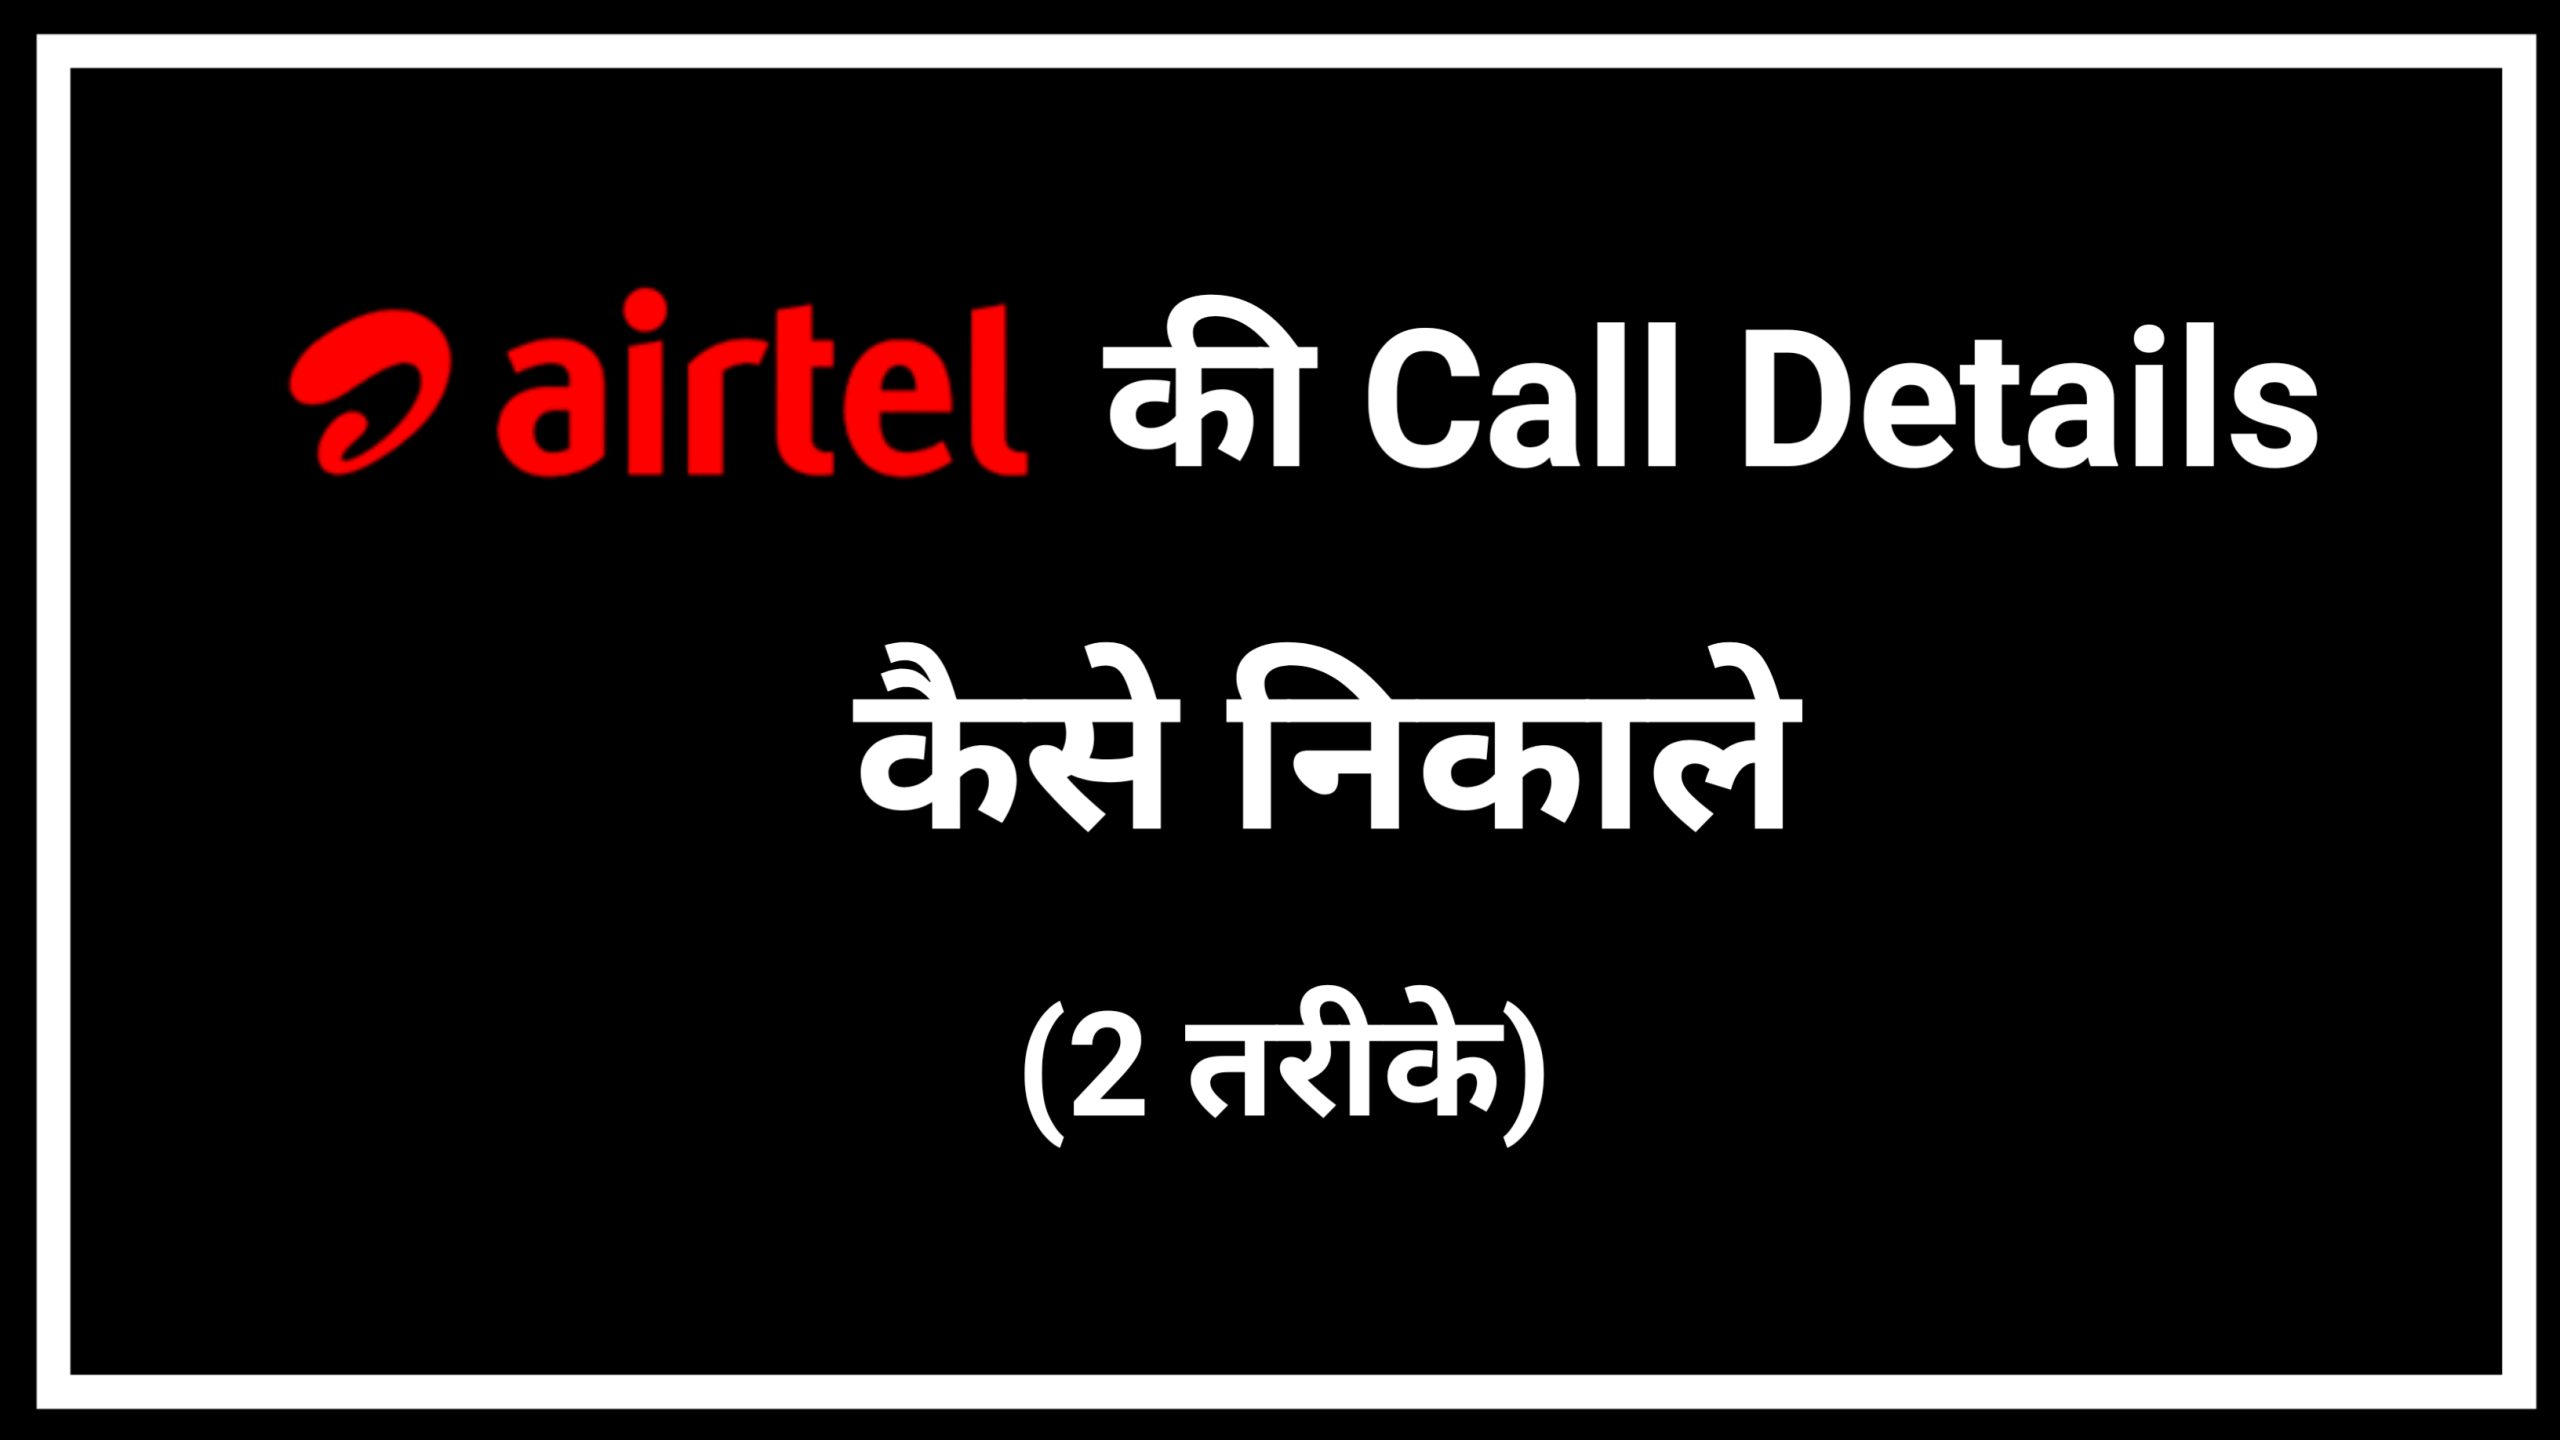 Airtel SIM Ki Call Details Kaise Nikale